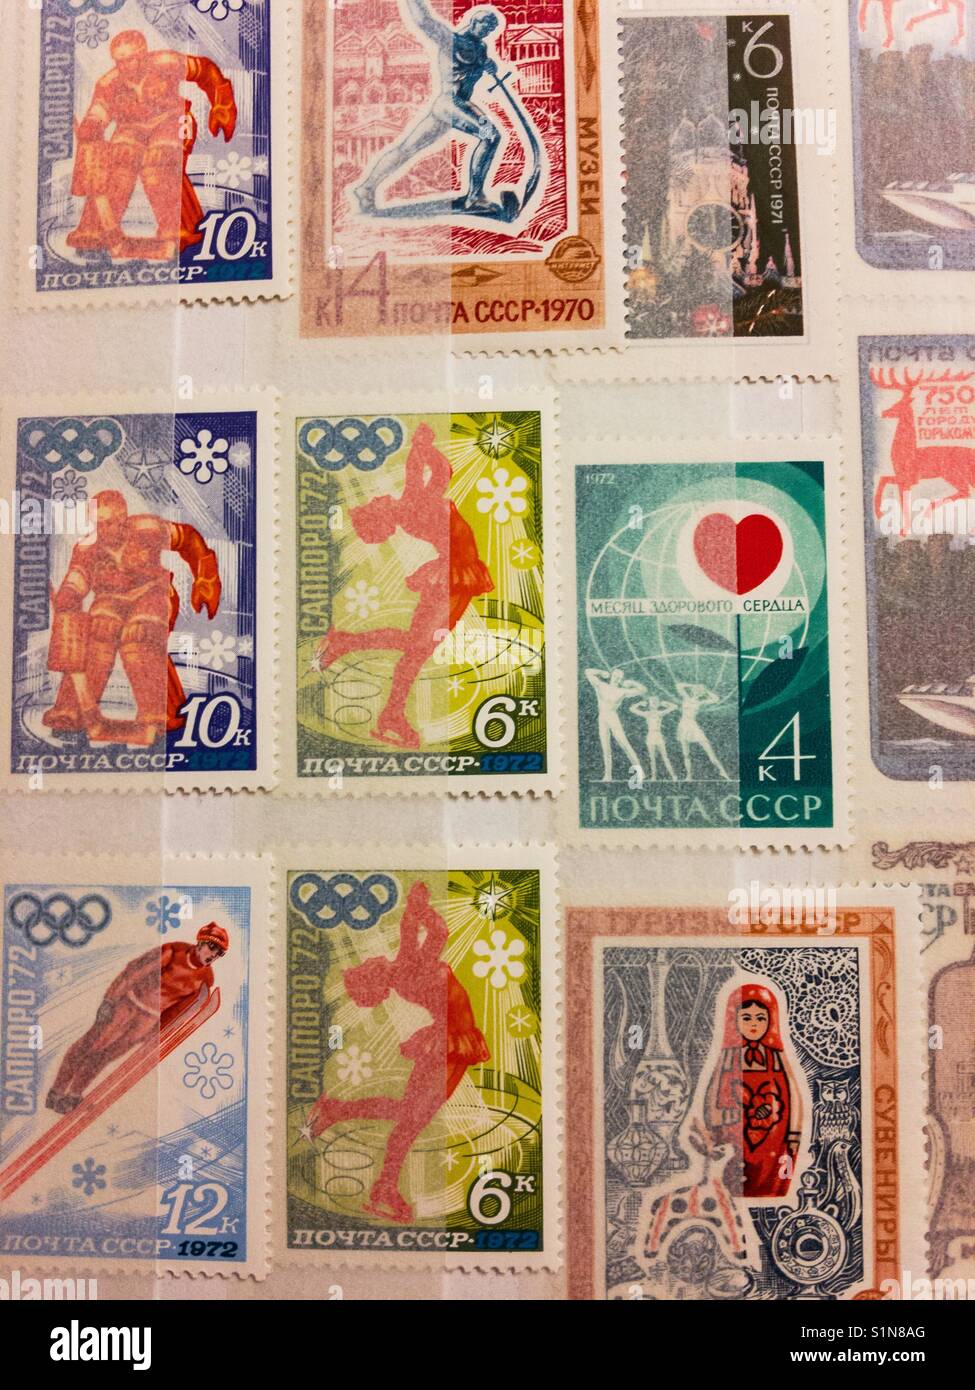 Почта СССР 1972 Olympic Games commemorative post stamps Stock Photo